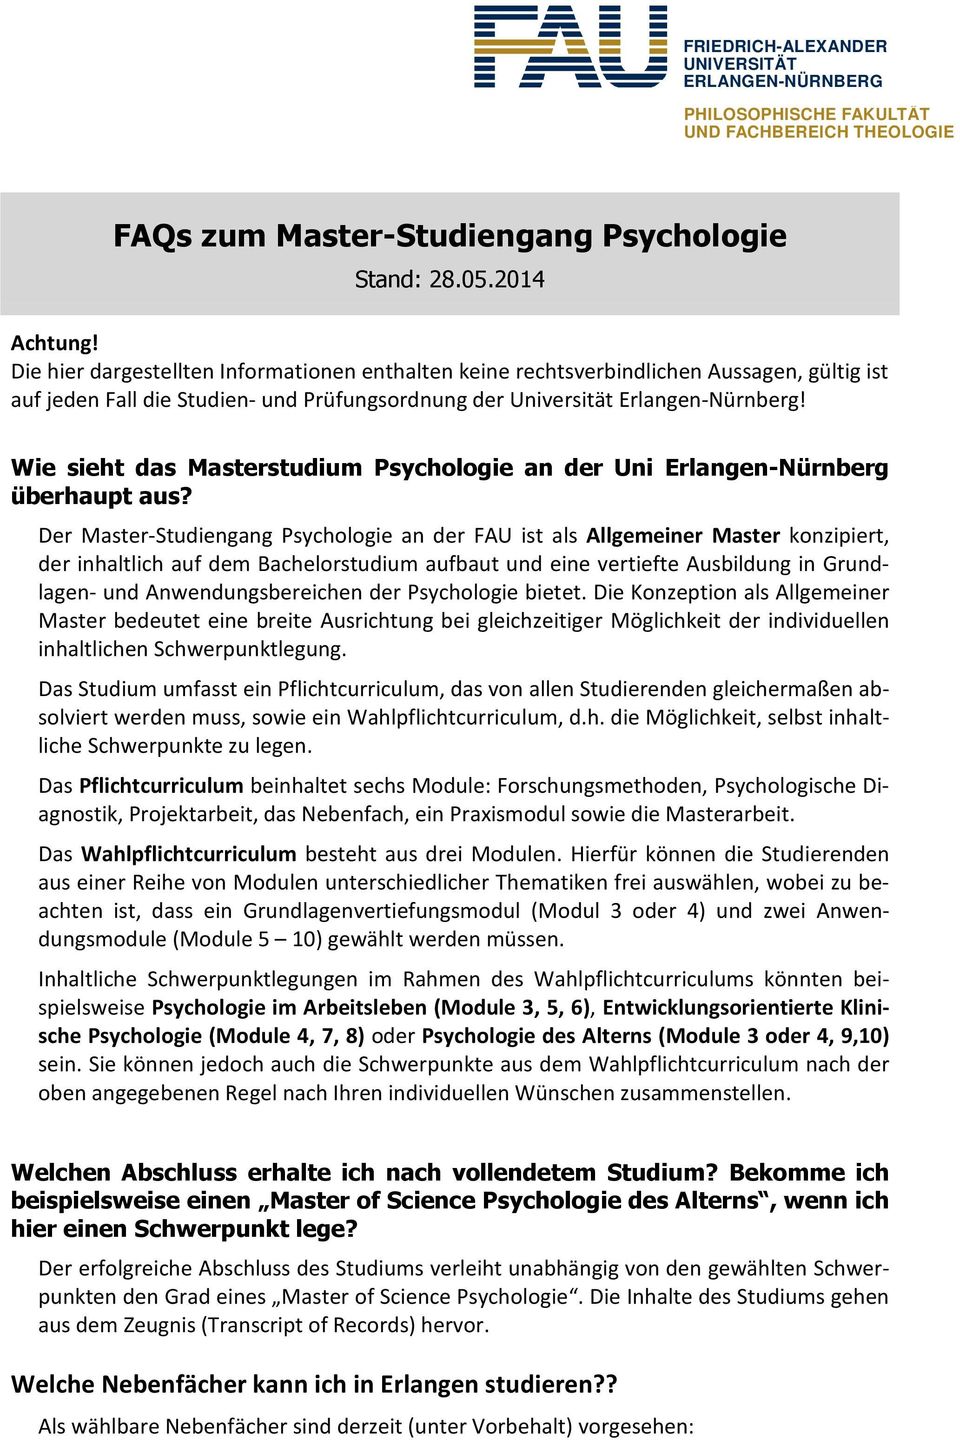 Wie sieht das Masterstudium Psychologie an der Uni Erlangen-Nürnberg überhaupt aus?